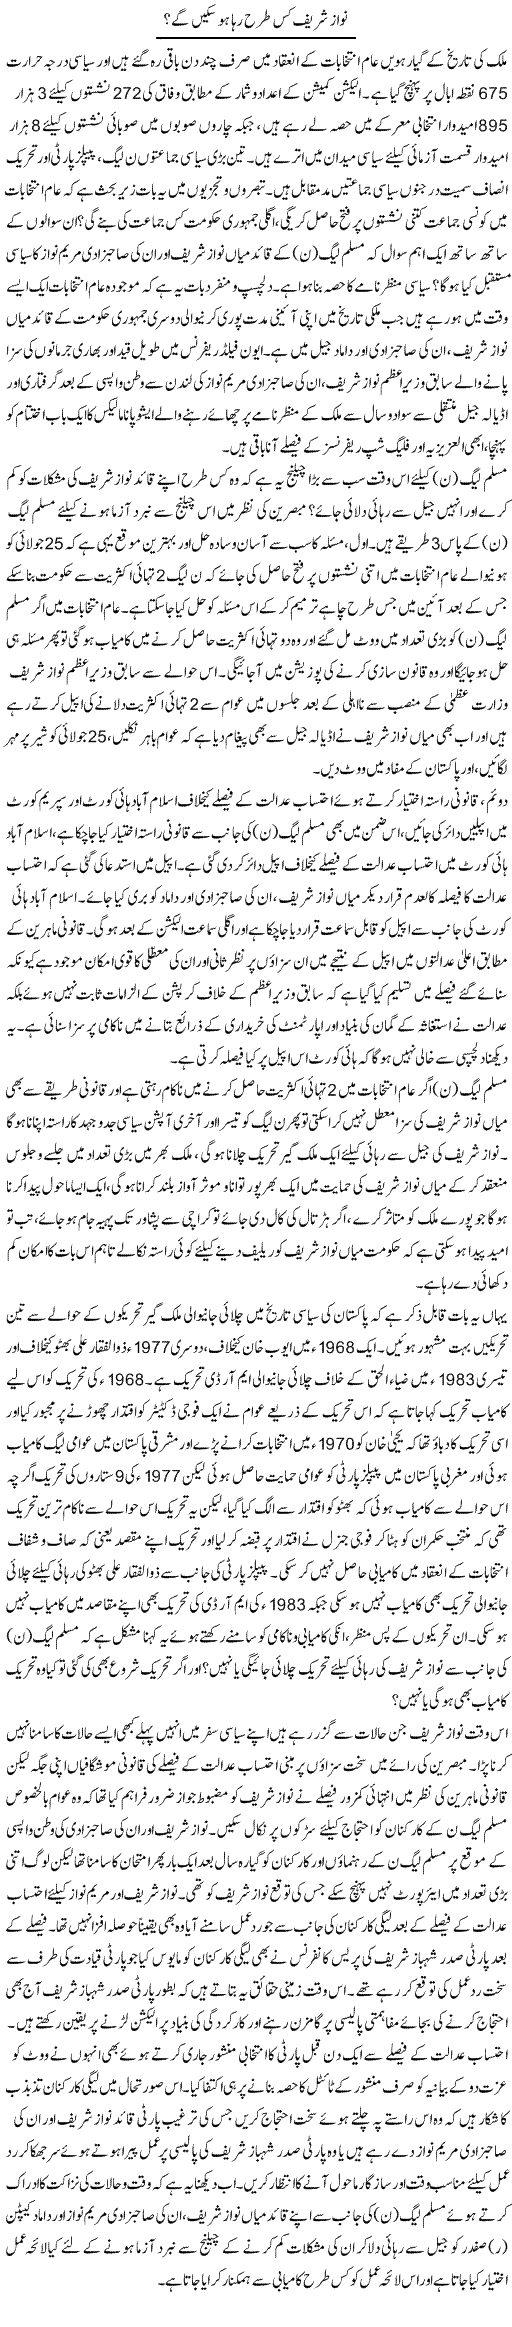 Nawaz Sharif Kis Tarha Reha Ho Saken Ge? | Tahir Najmi | Daily Urdu Columns